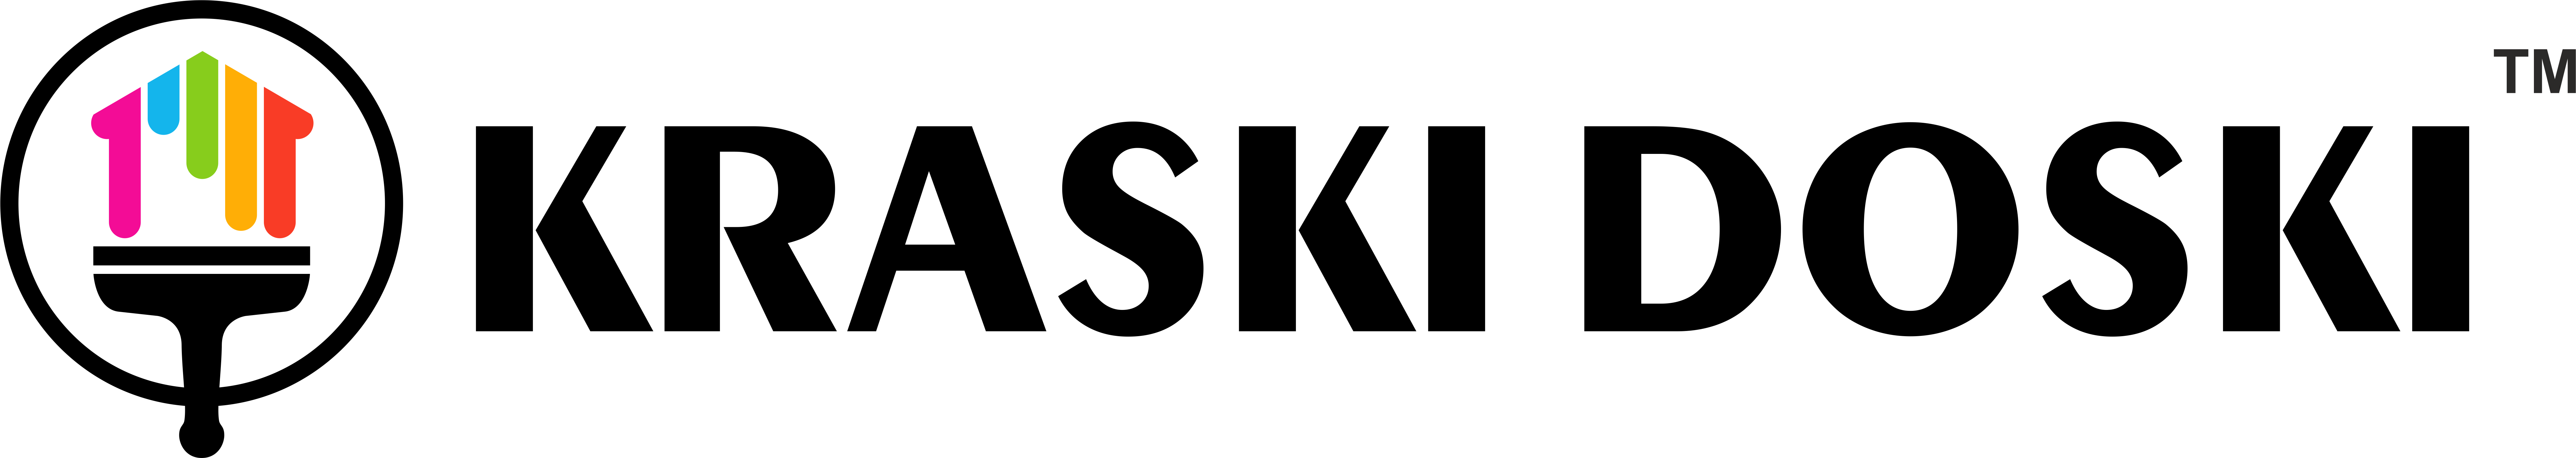 Продажа отделочных пиломатериалов с окраской на производстве - Город Санкт-Петербург KRASKI DOSKI TM - LONG LOGO BLACK (transparent).png